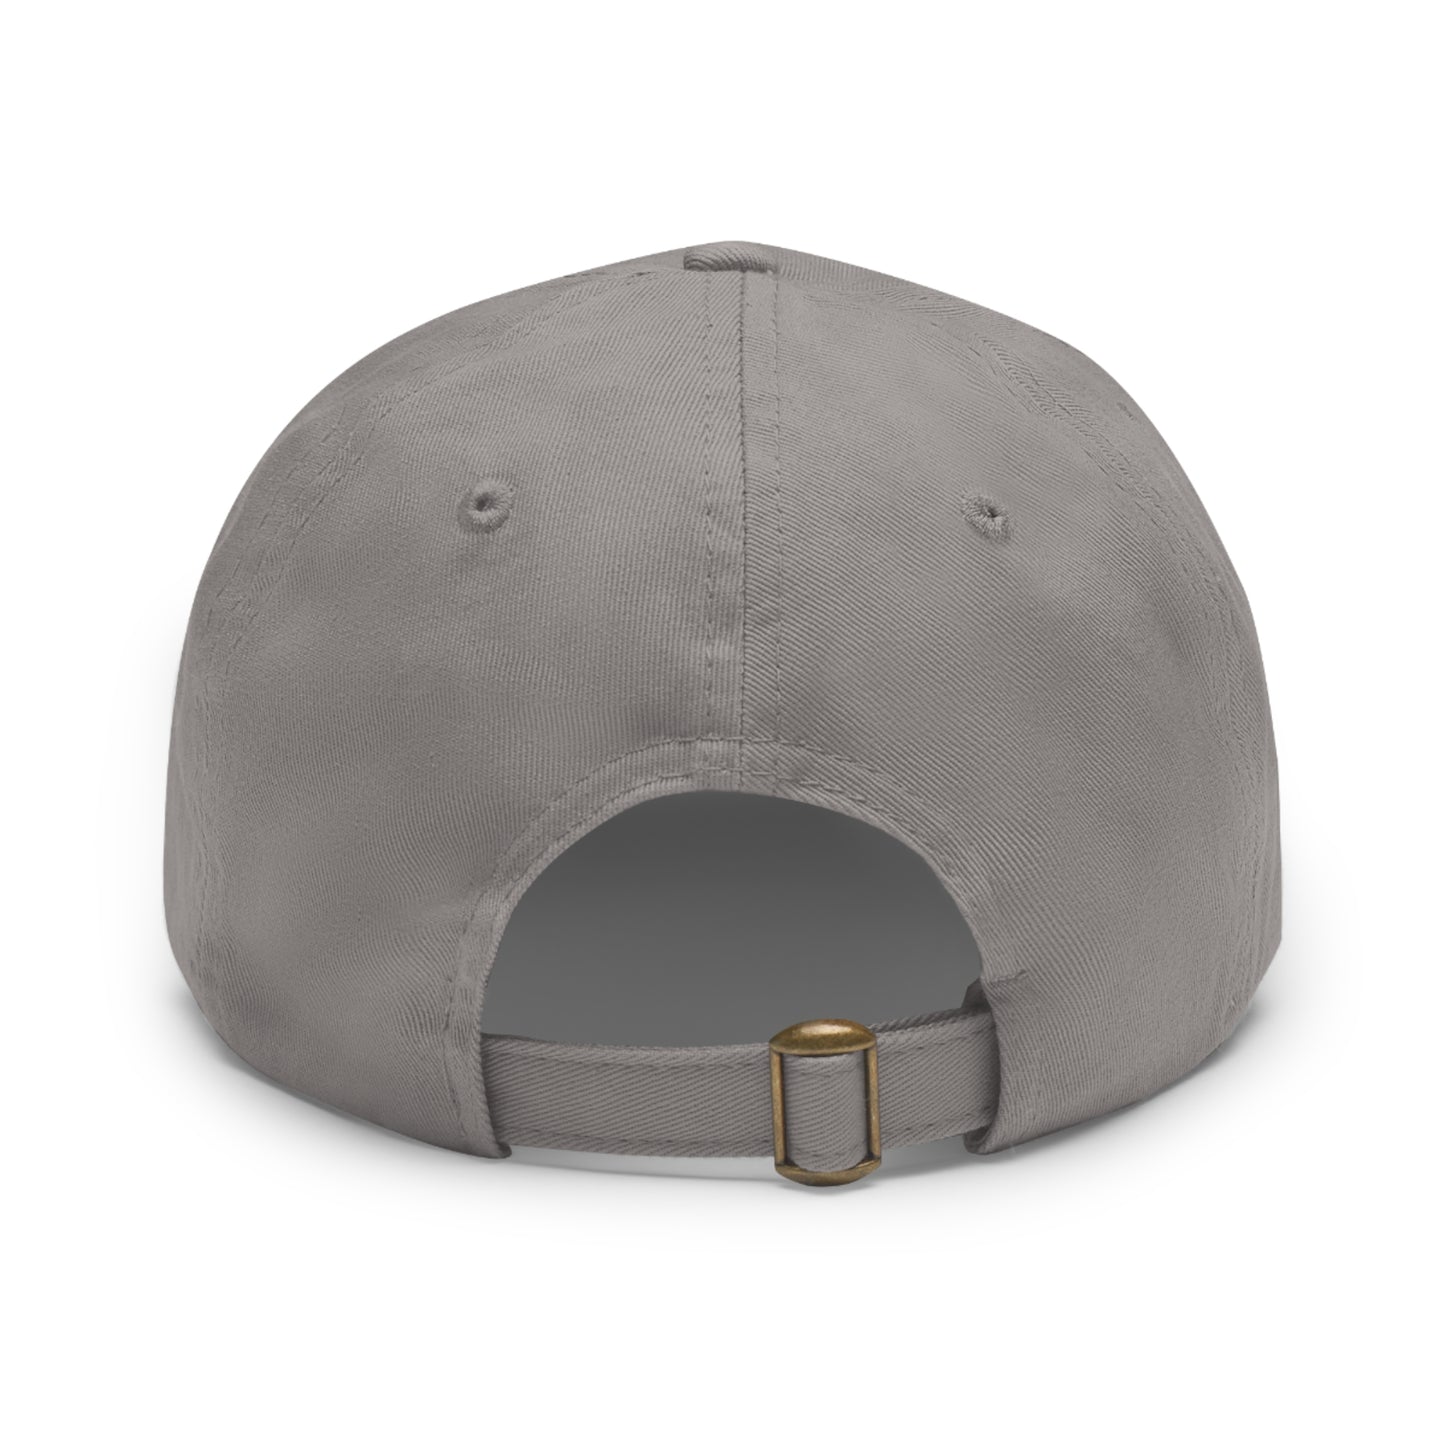 NENR LIFESTYLE HAT ~ Low Profile Cap